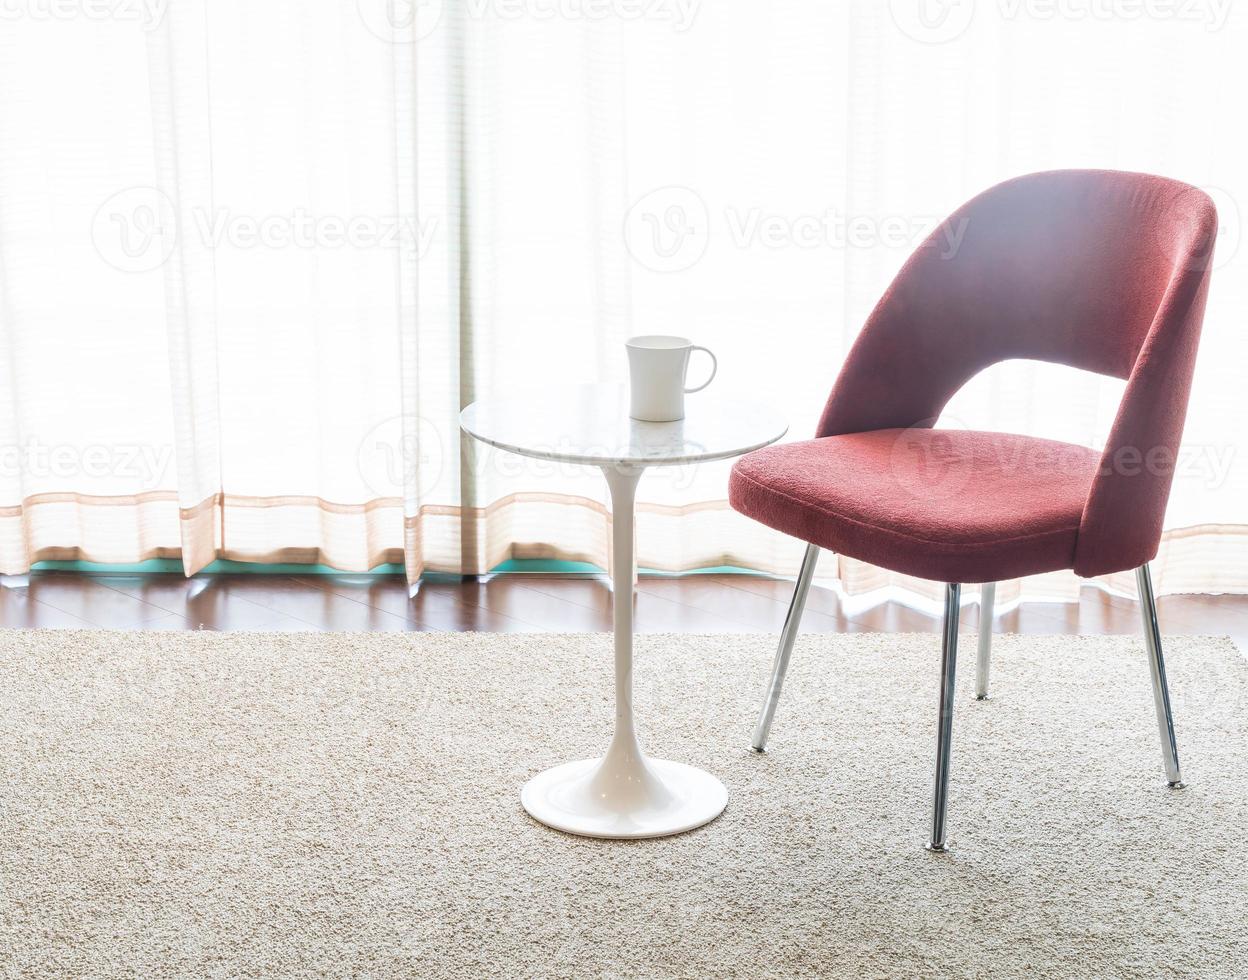 koffiekopje met mooie luxe stoel en tafeldecoratie in woonkamer interieur voor achtergrond - vintage filter foto